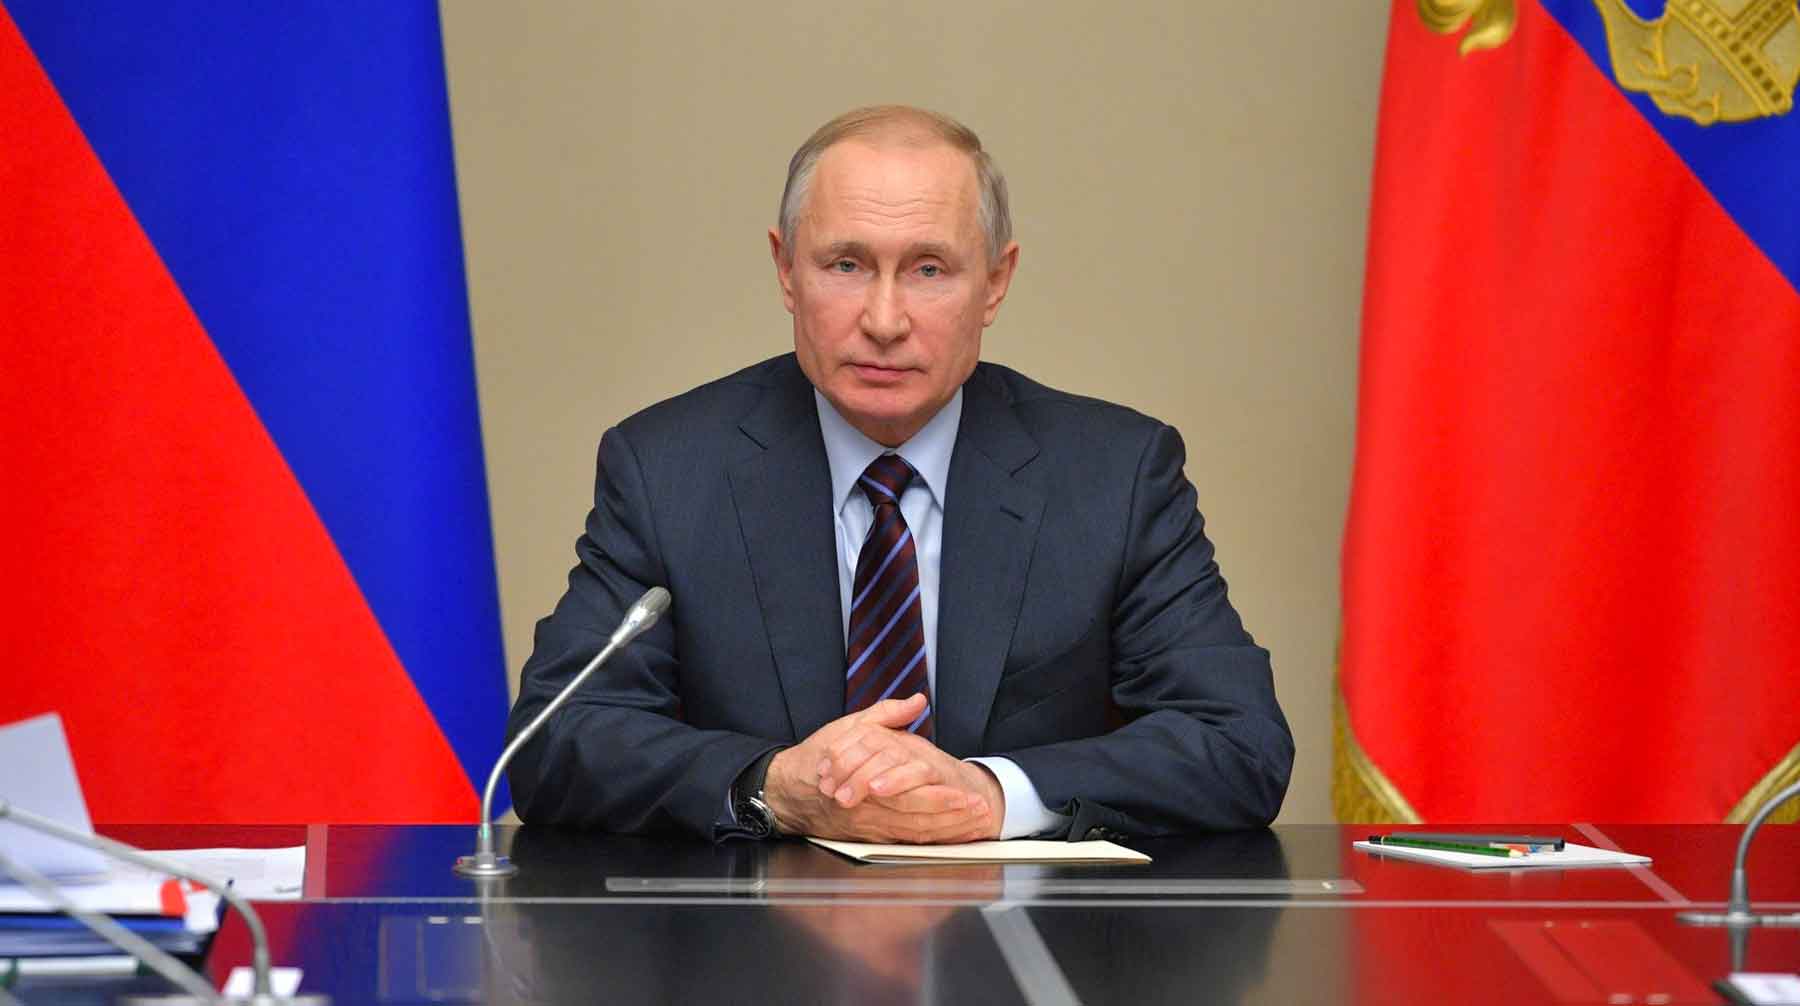 Планируется, что президент объявит свое отношение к грядущим изменениям Фото: © GLOBAL LOOK press / Kremlin Pool